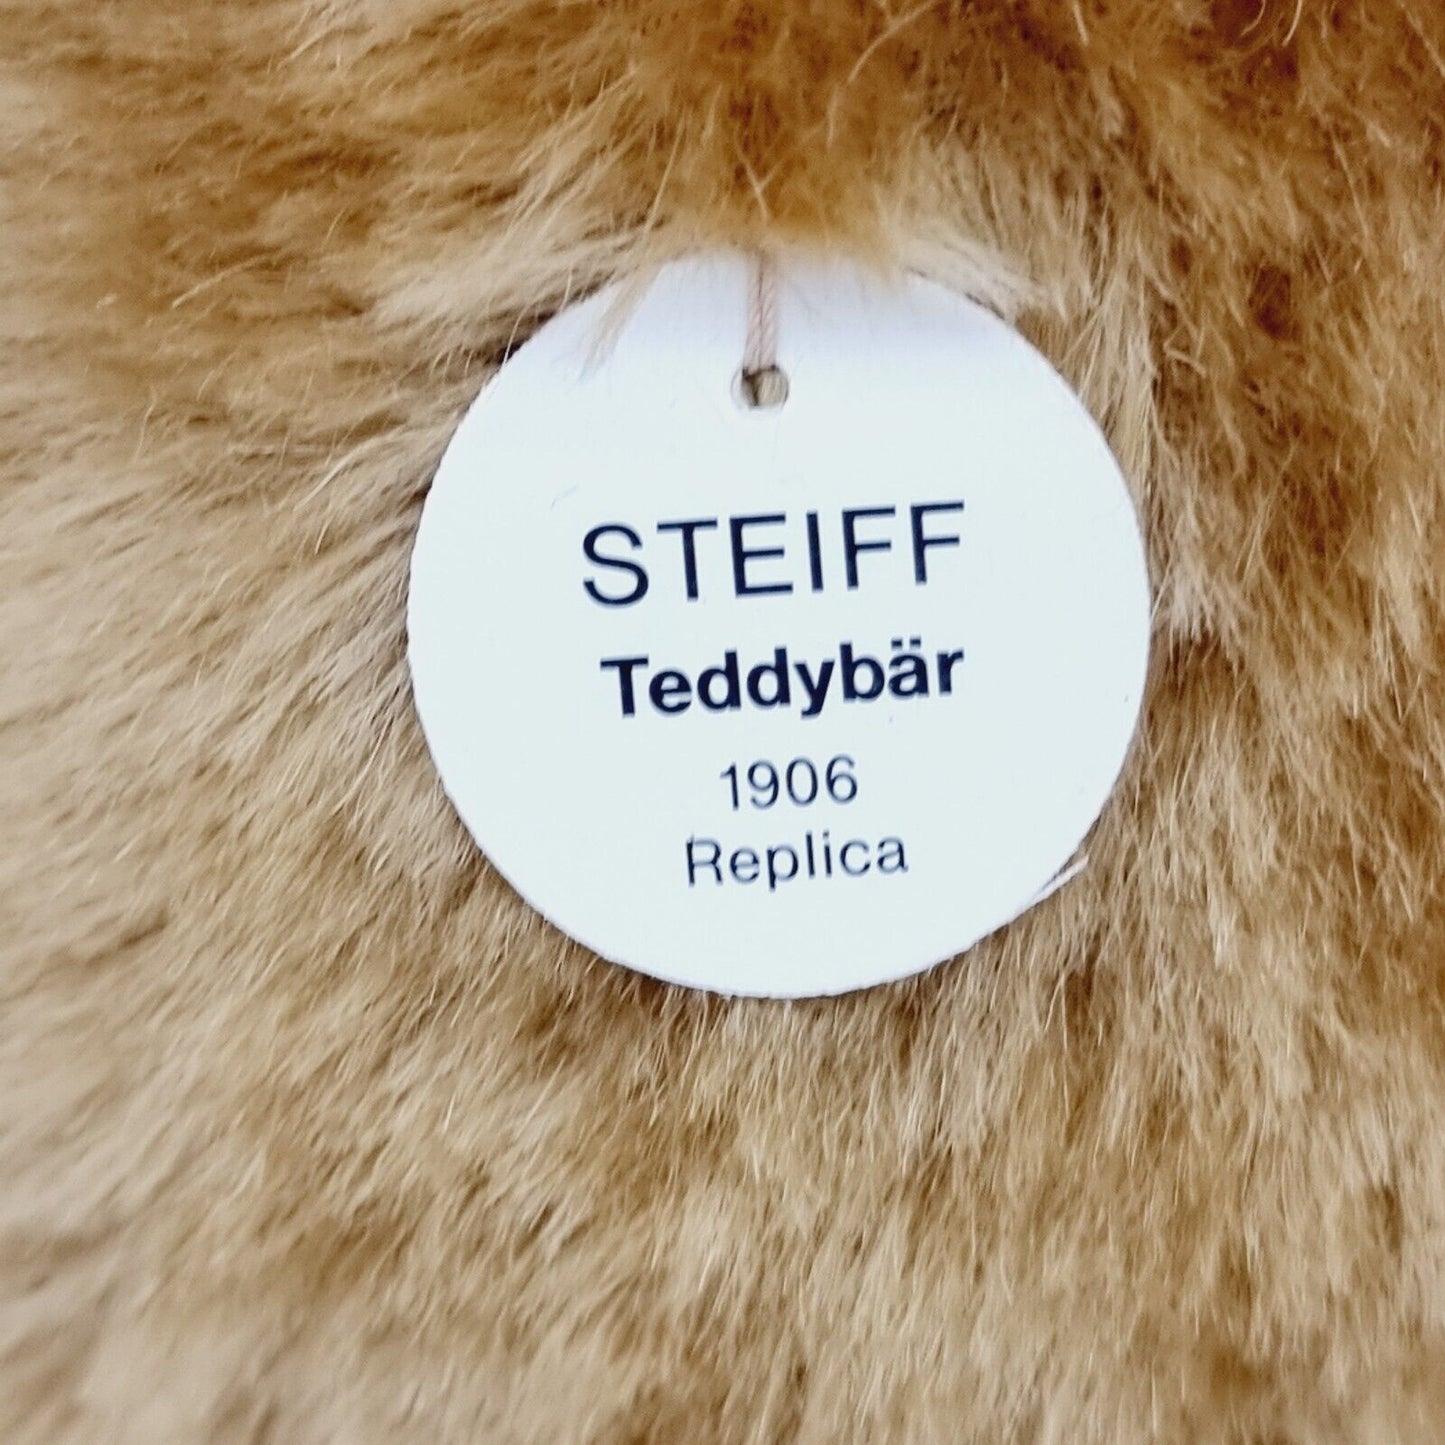 405891 Steiff Teddybär 1906 Replica 1994 43 cm blond limitiert